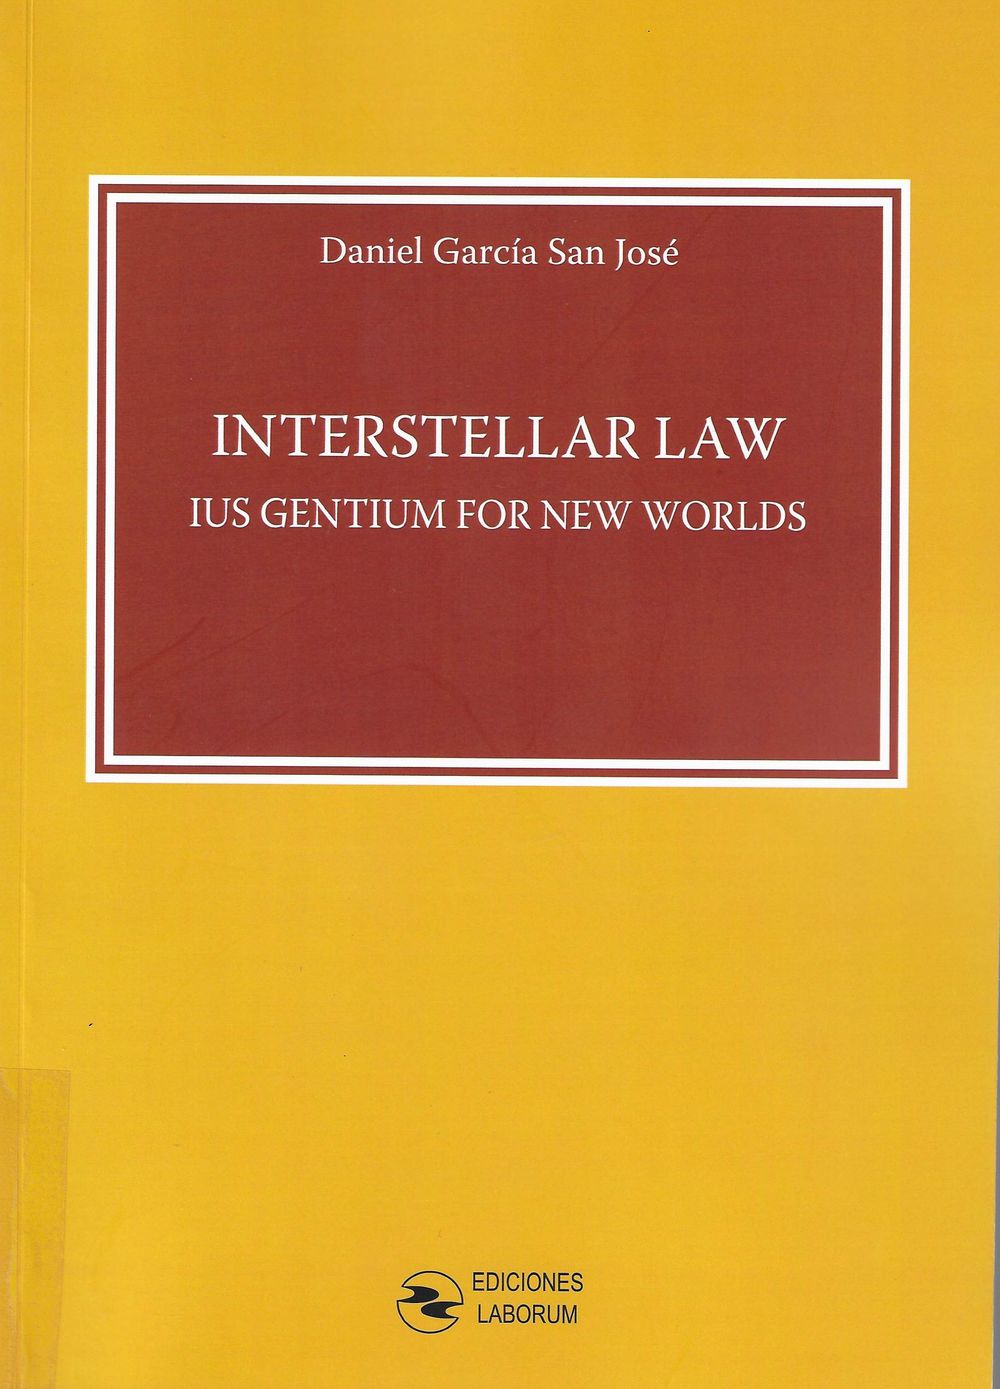 Imagen de portada del libro Interstellar Law